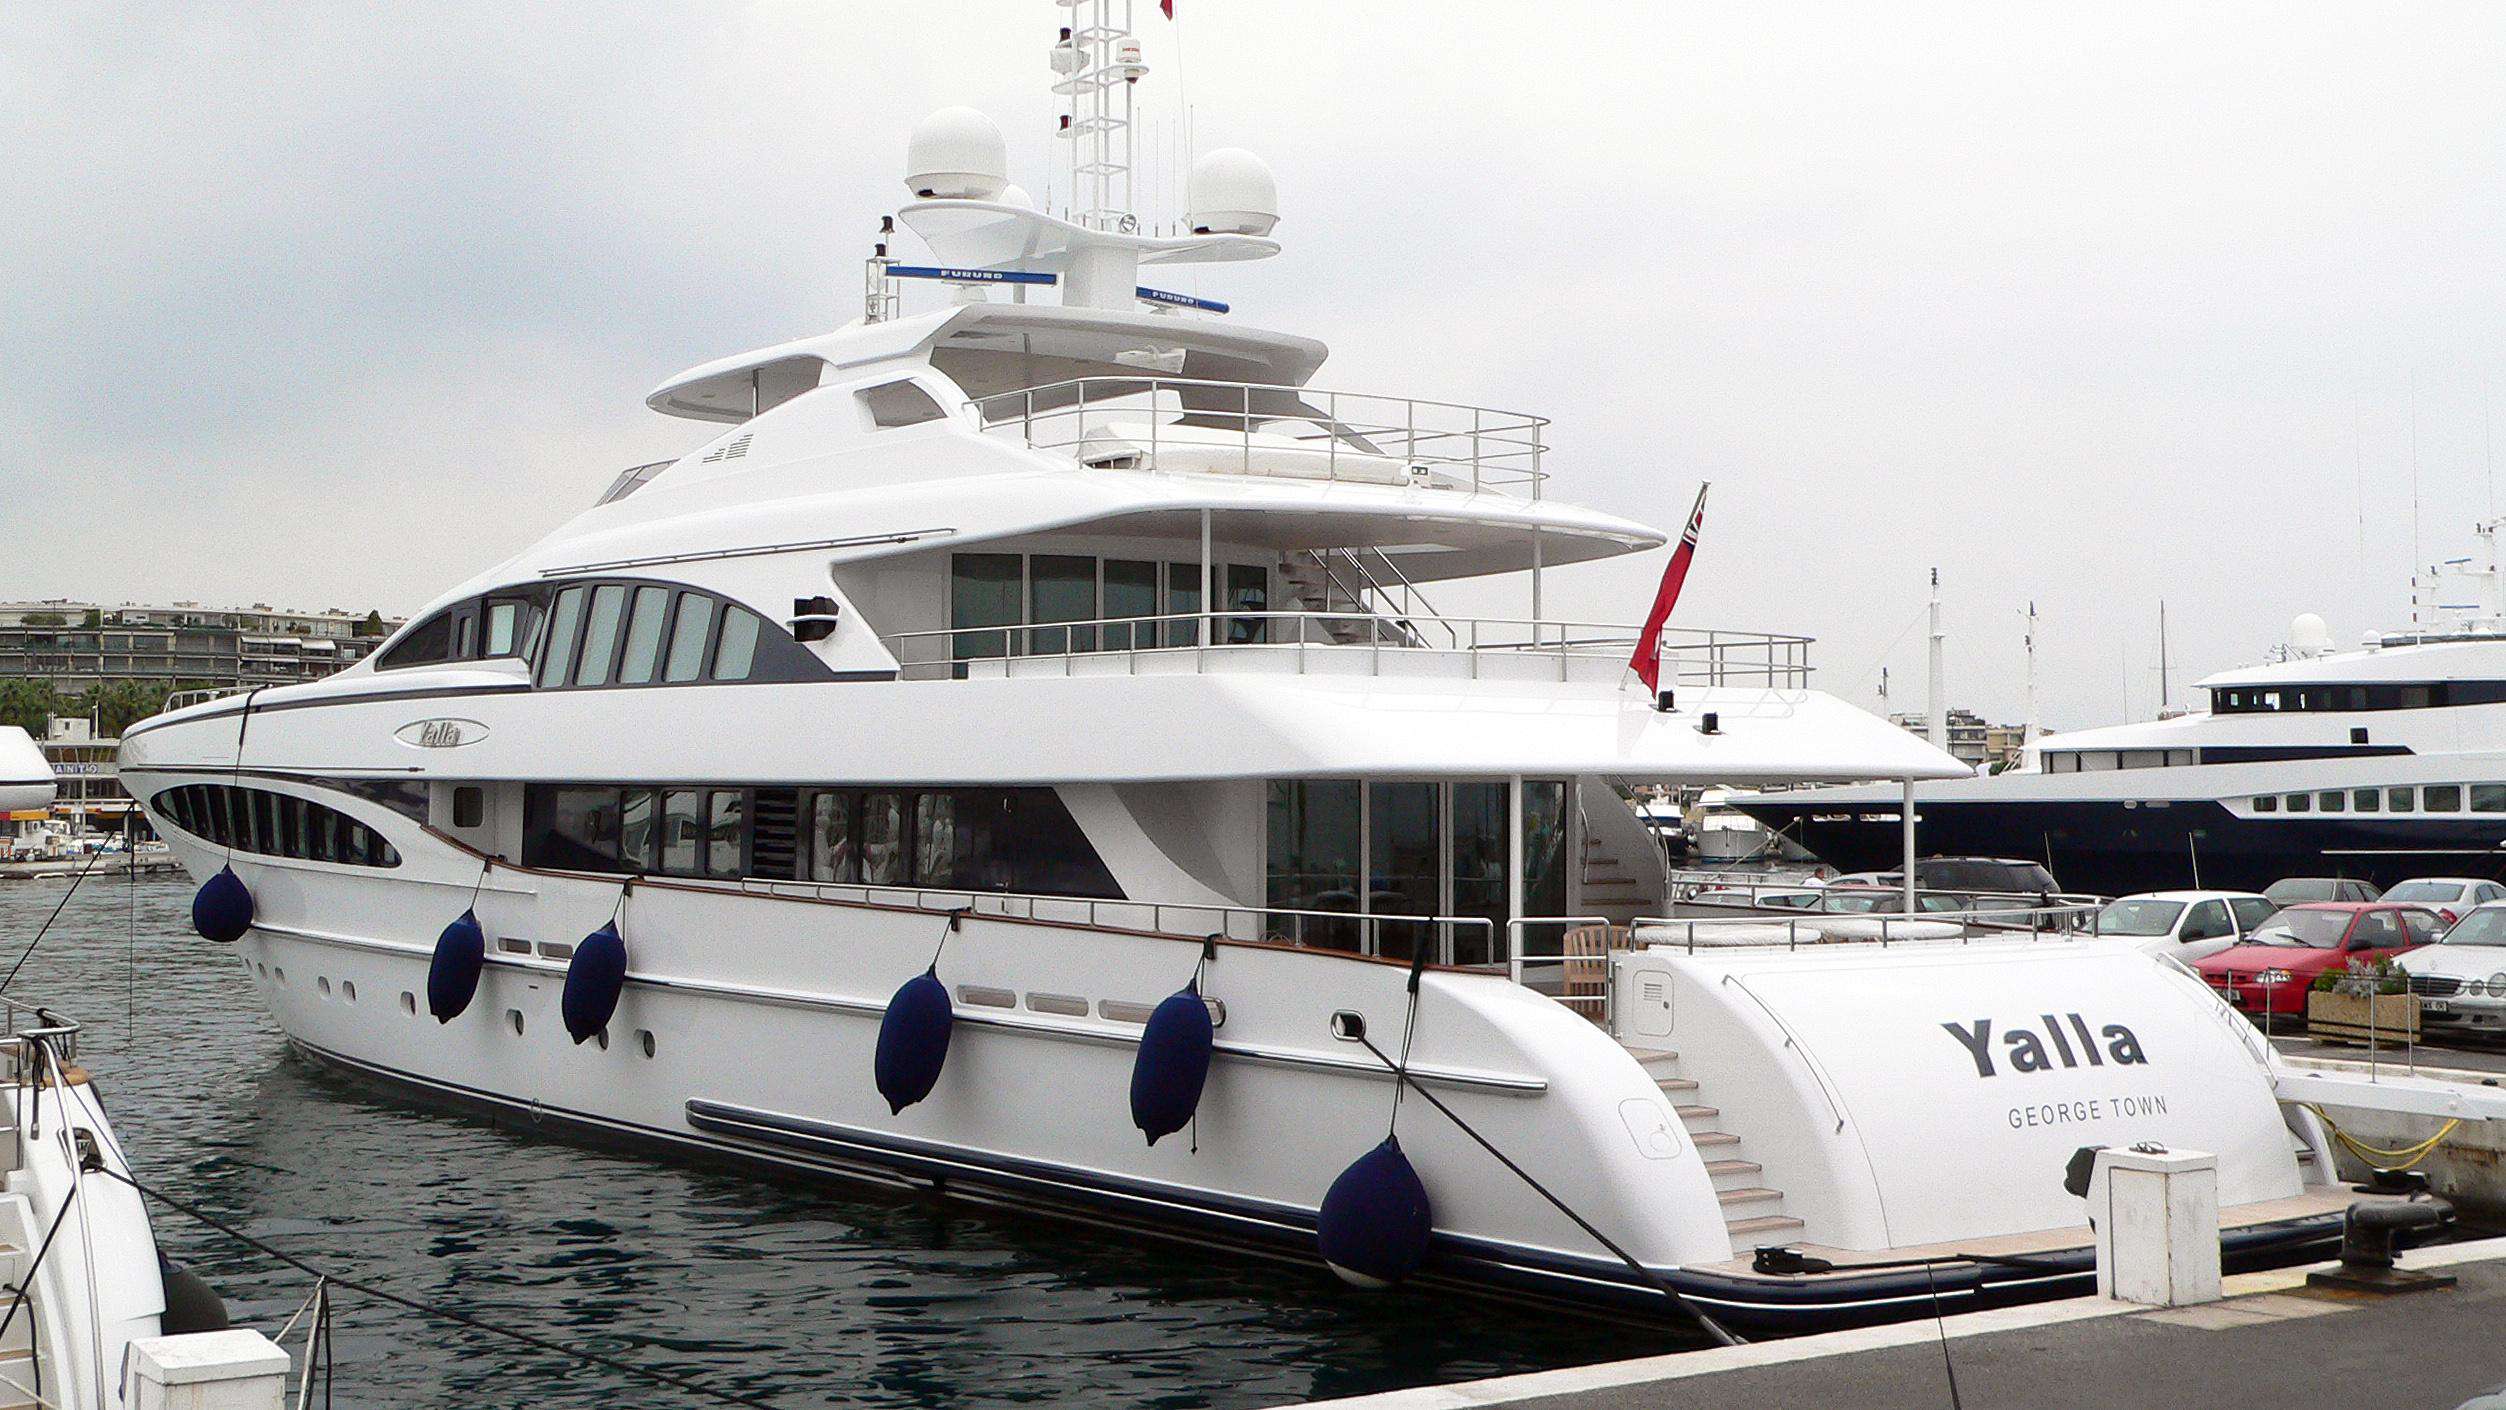 motor yacht yalla 47m